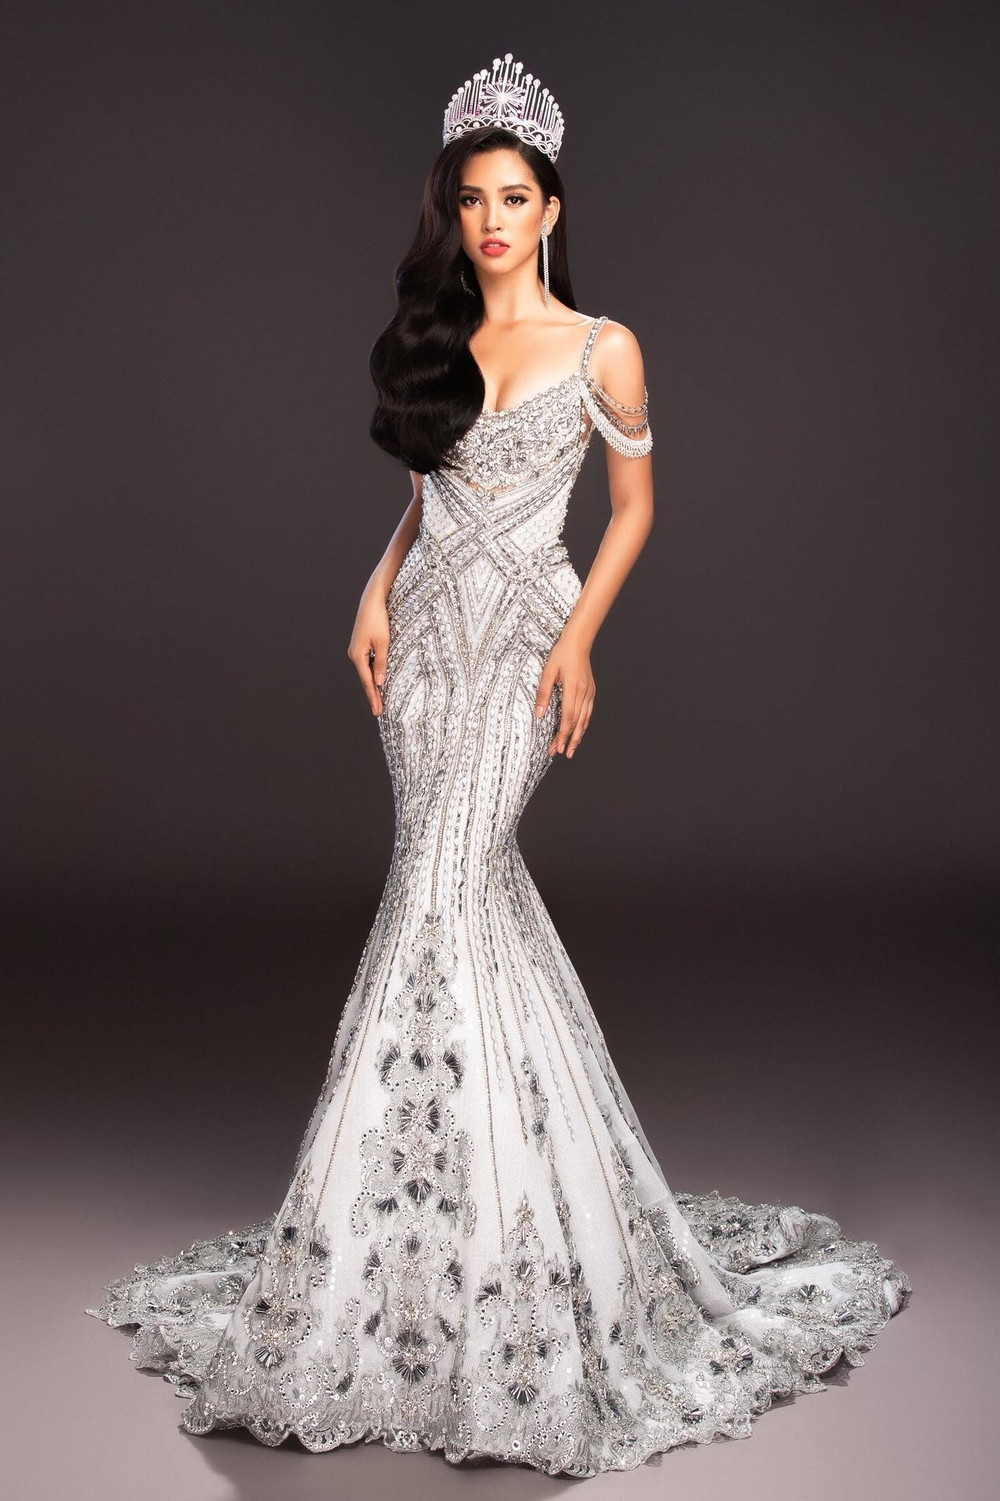 Hoa hậu 2018 Trần Tiểu Vy sở hữu chiều cao 1m74, số đo 3 vòng là 84-63-93.